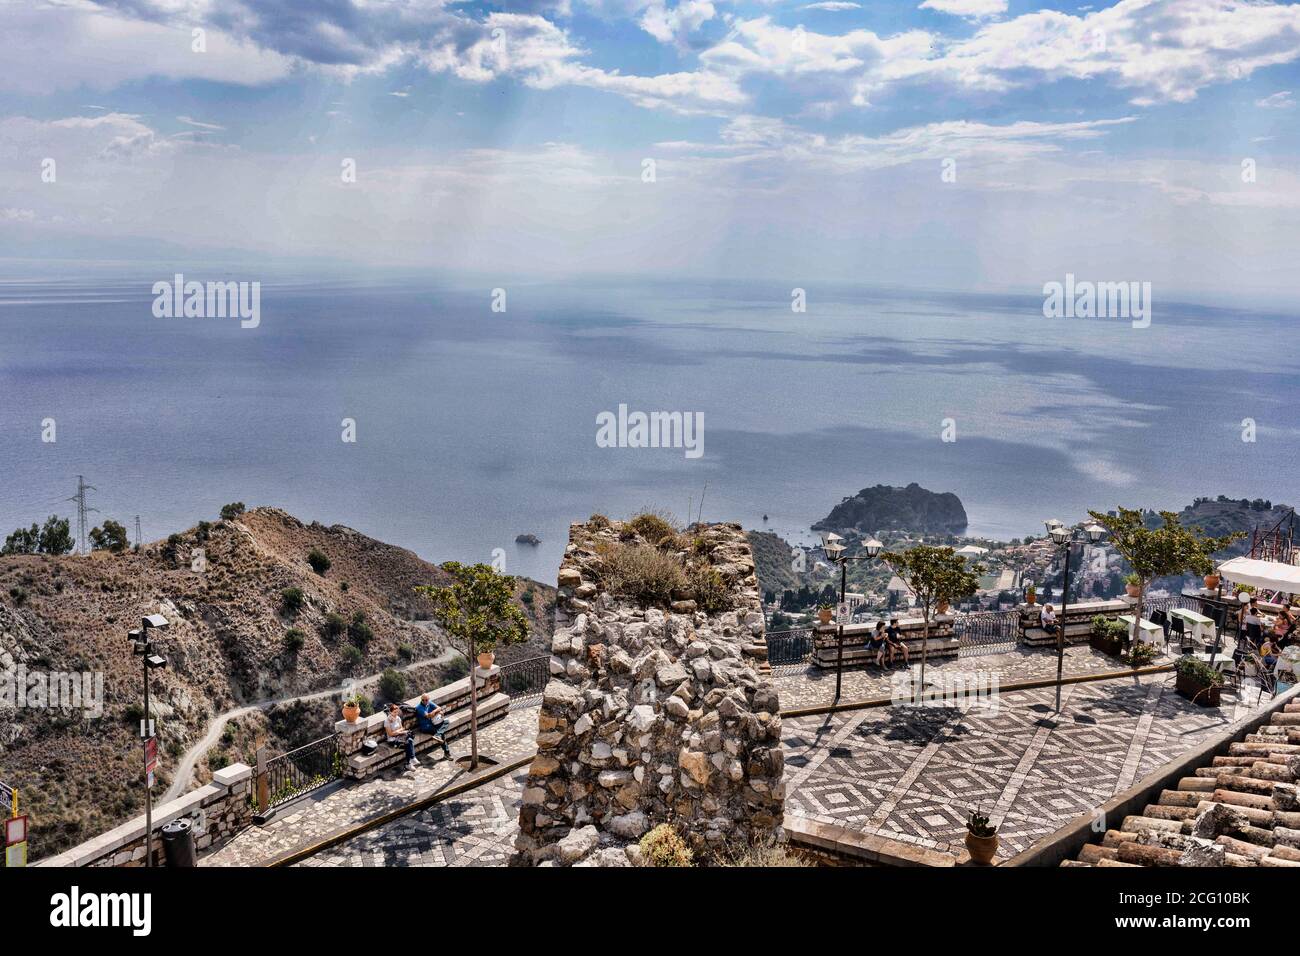 Overlooking Taormina from Castel Mola, Sicily, Italy Stock Photo